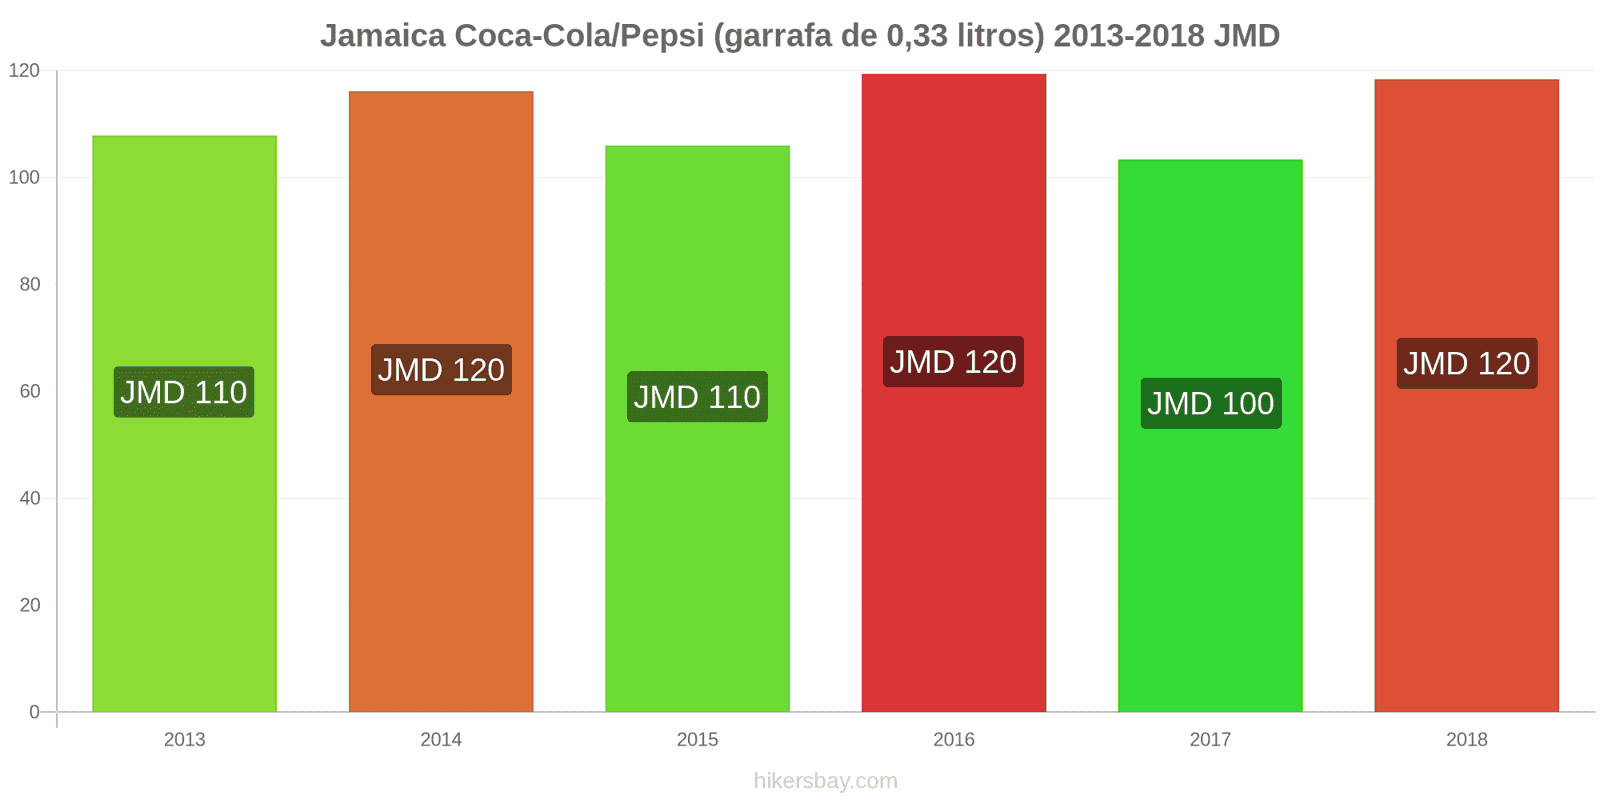 Jamaica mudanças de preços Coca-Cola/Pepsi (garrafa de 0.33 litros) hikersbay.com